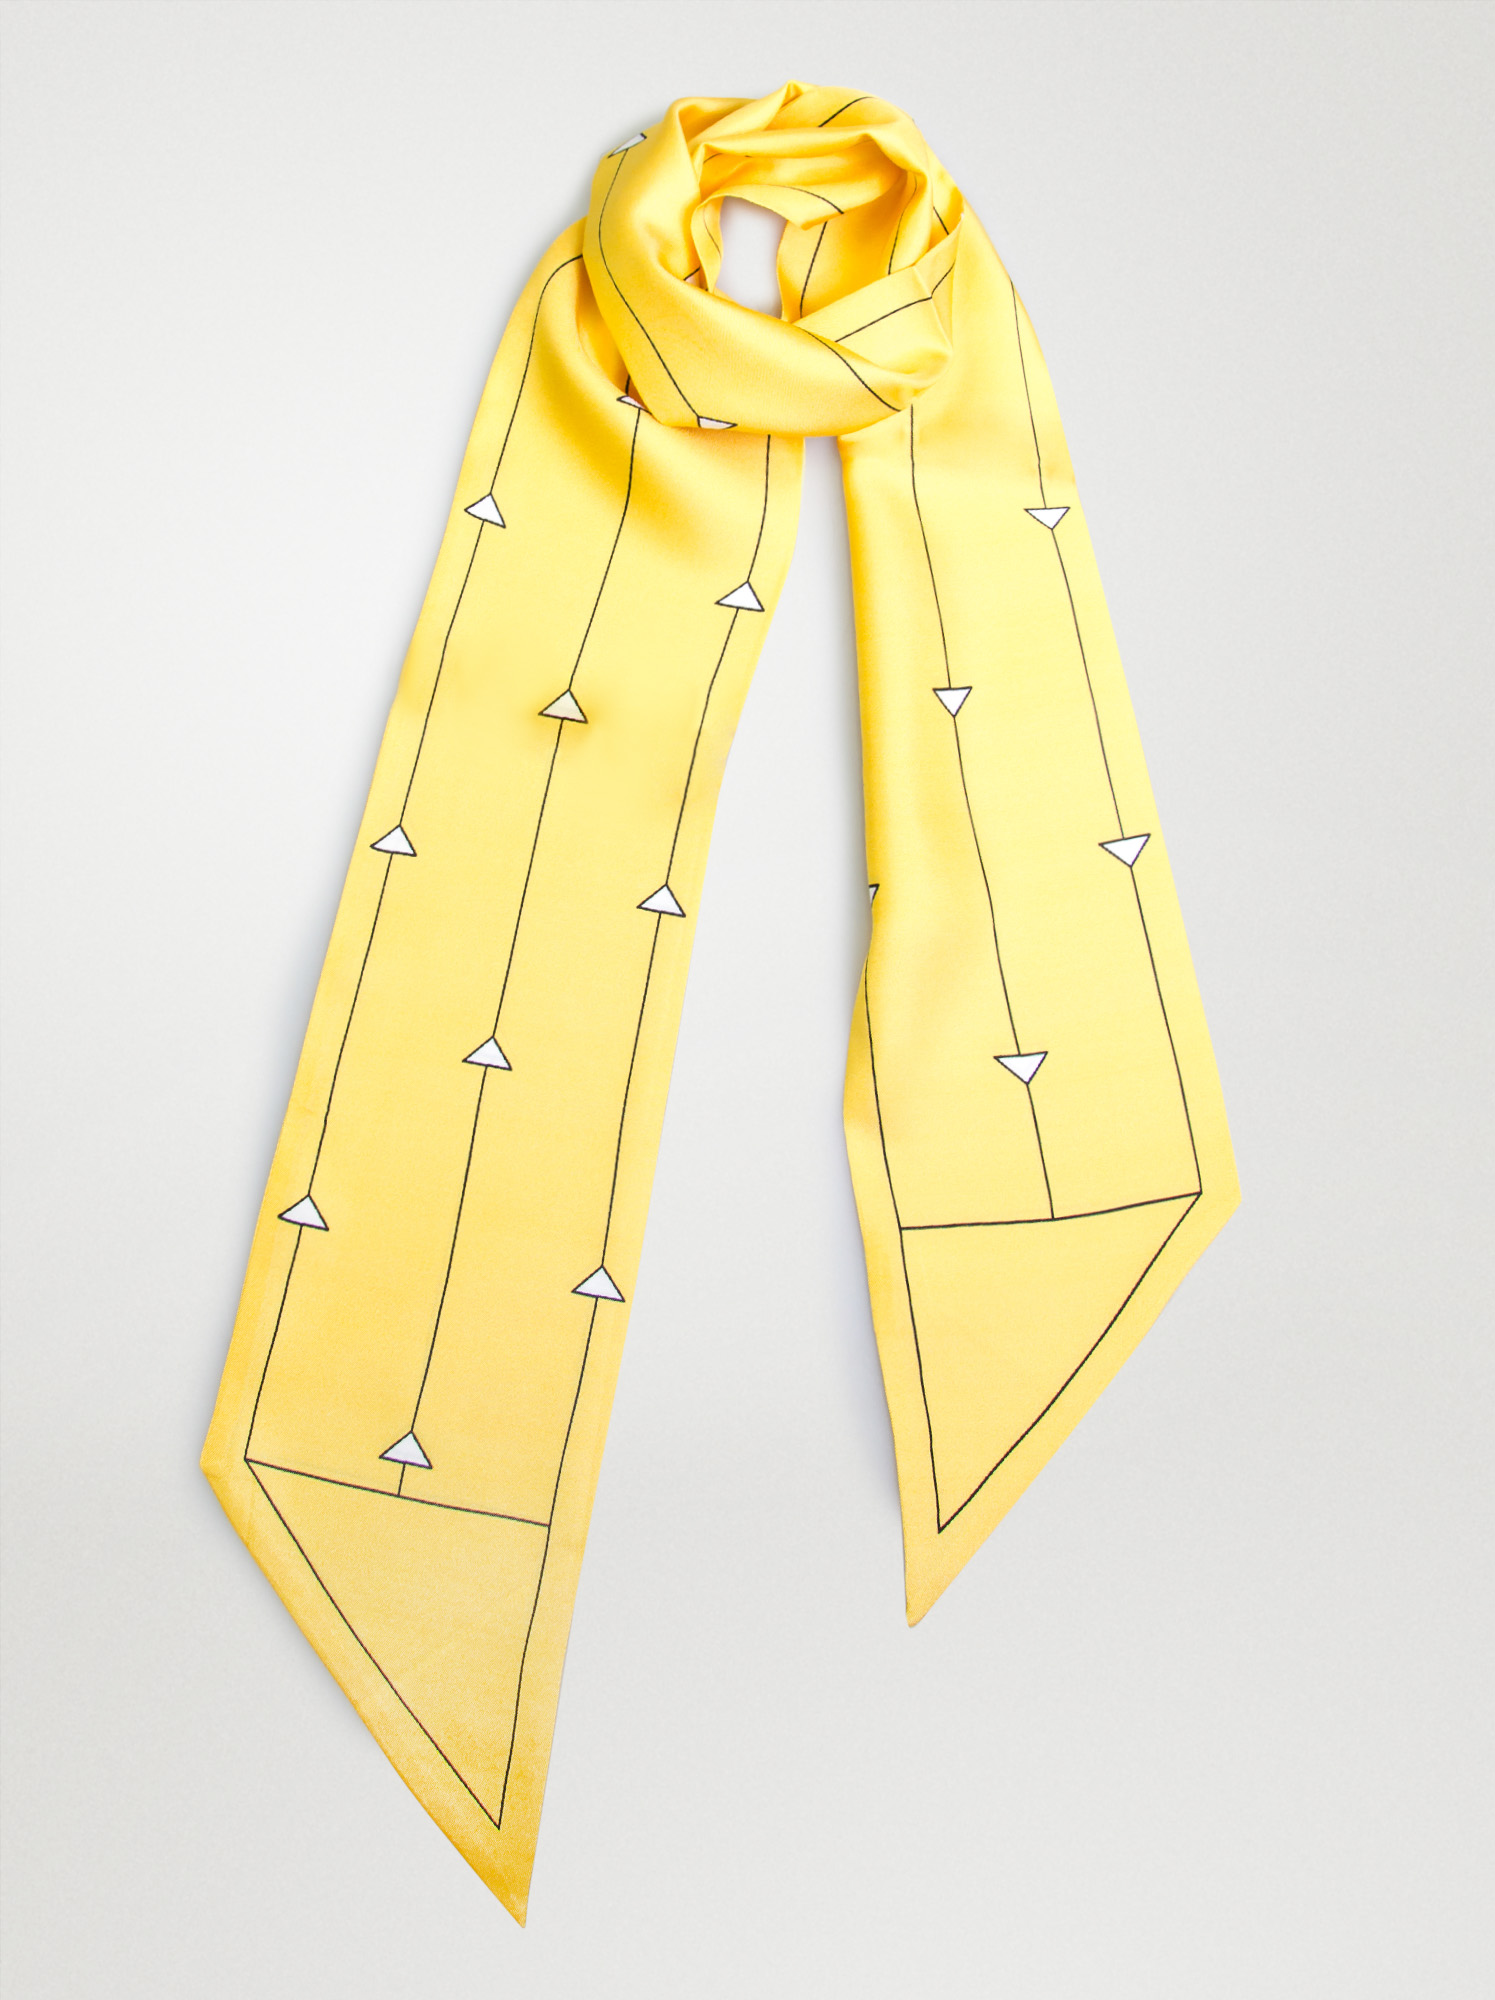 Szalik z podwójnego jedwabiu krawatka we wzory zdjęcie 1